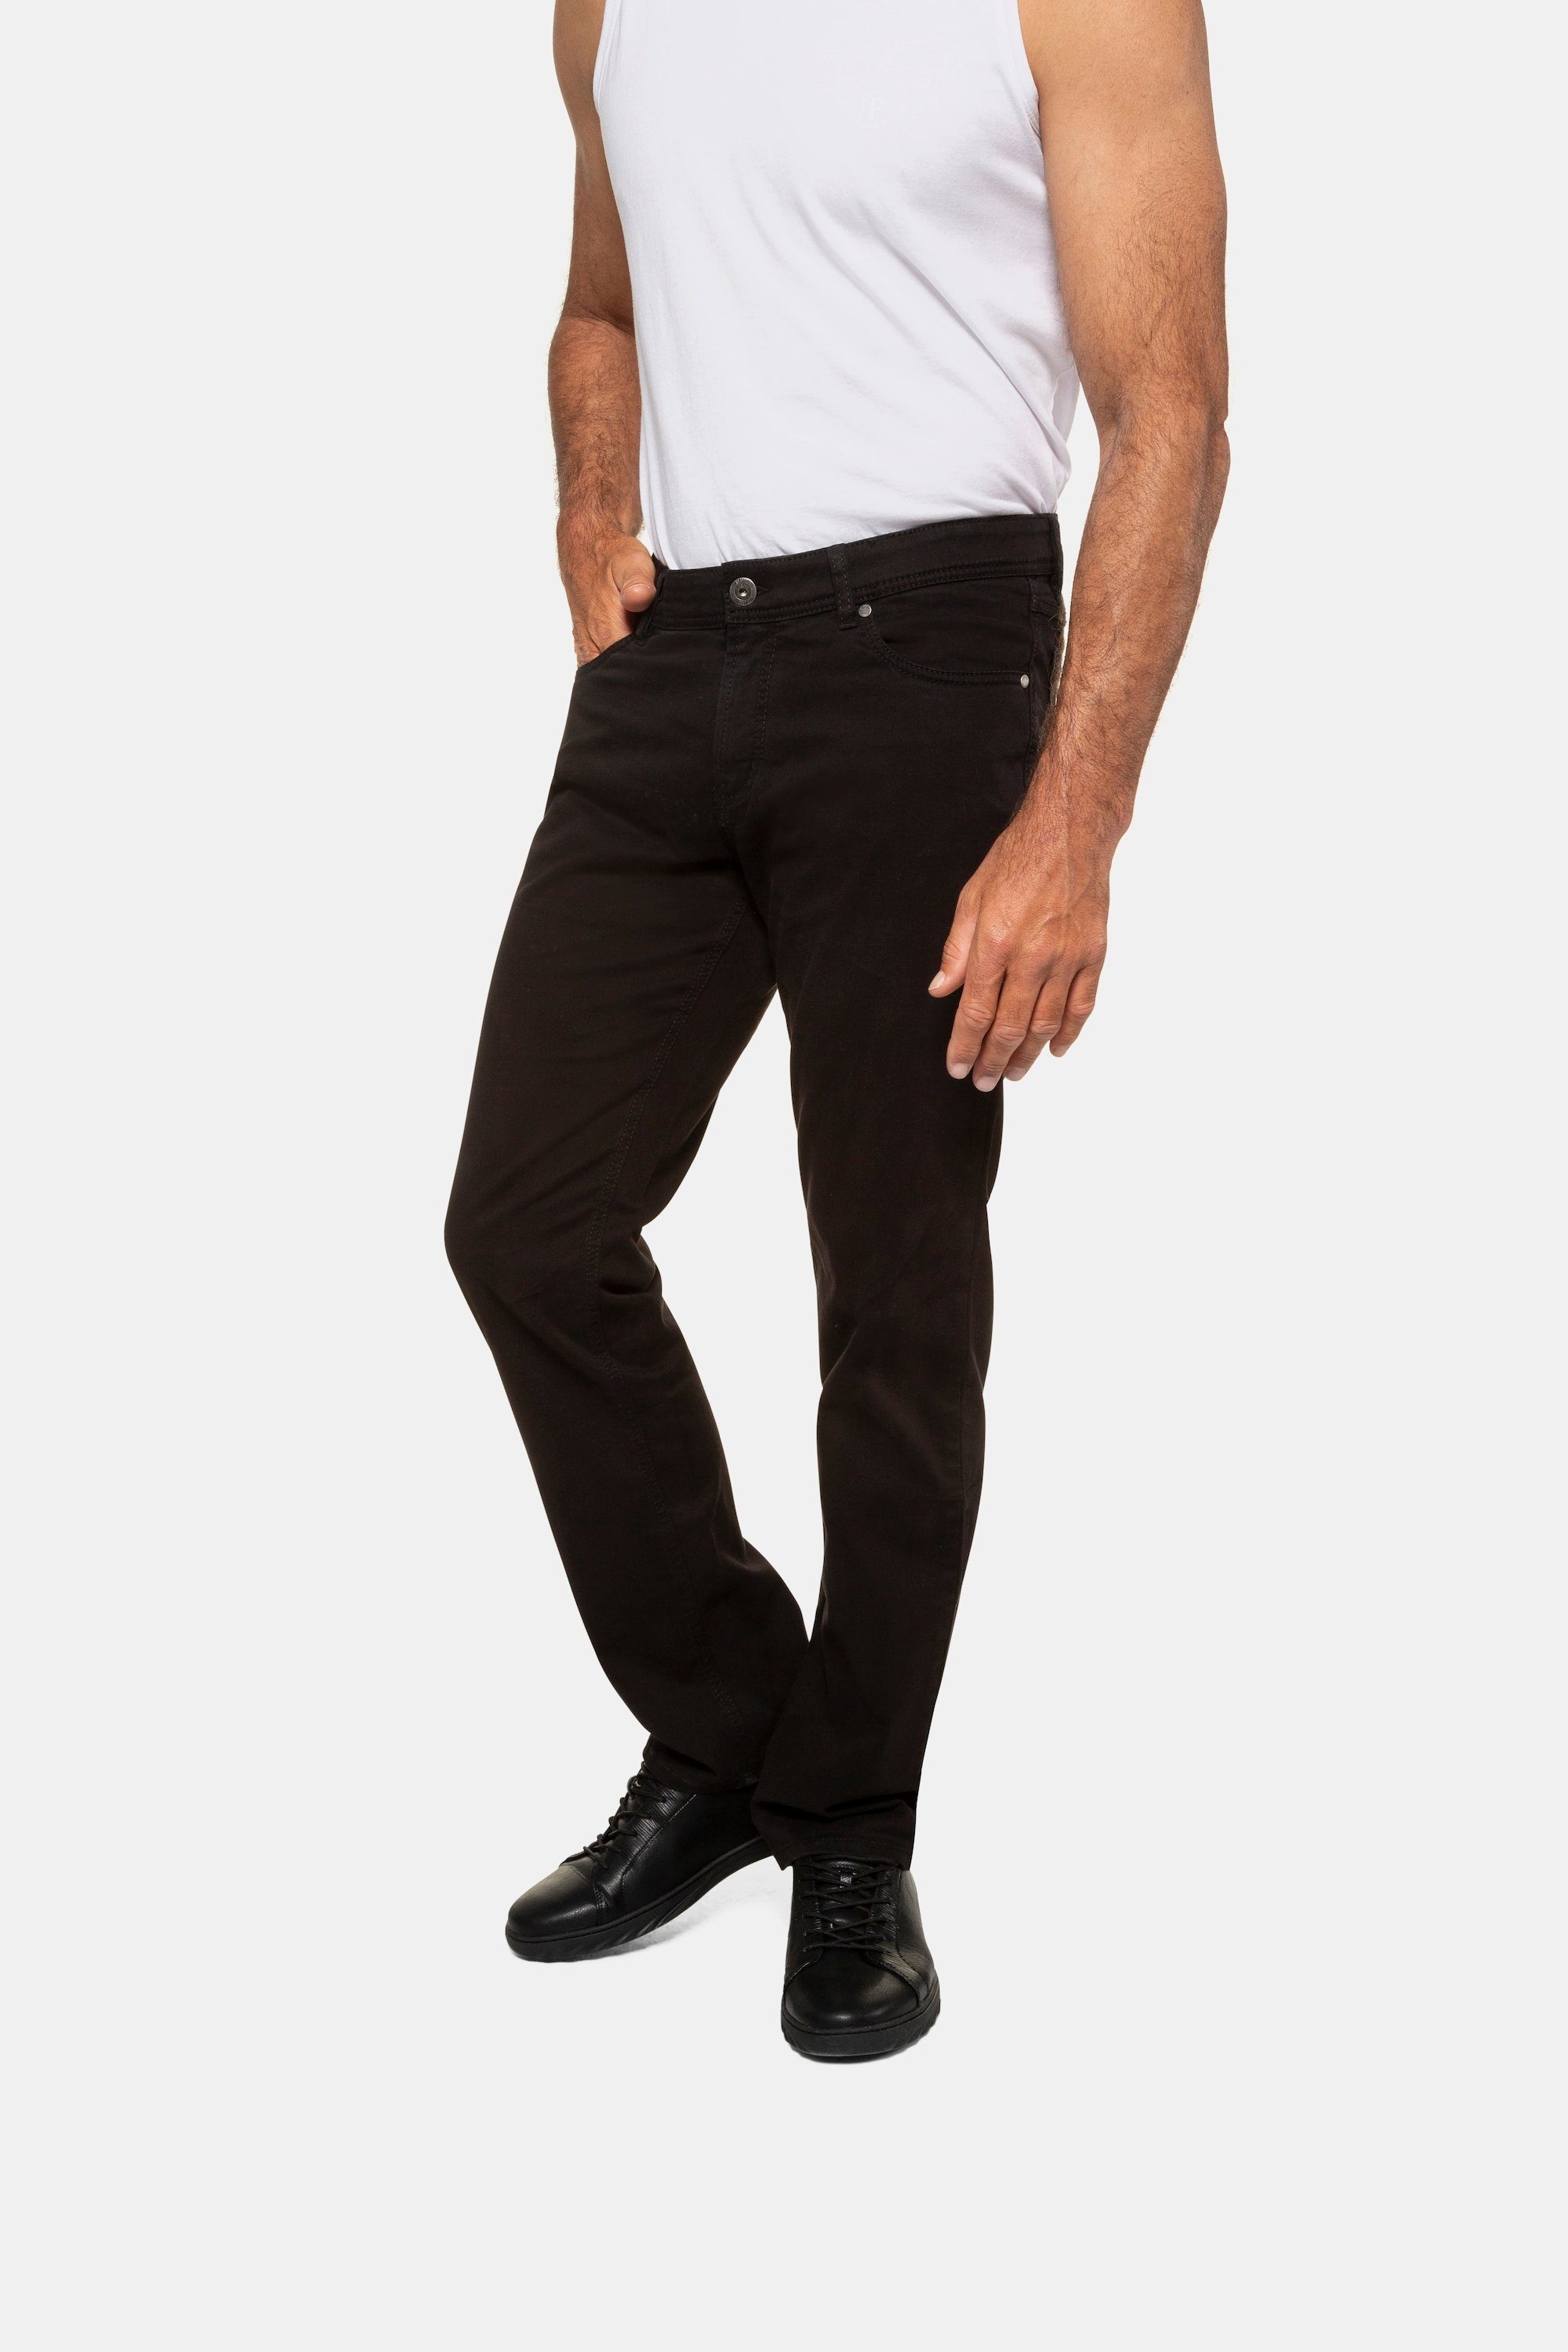 JP1880 5-Pocket-Jeans Twillhose Bauchfit bis Größe N-70/U-35 schwarz | Straight-Fit Jeans